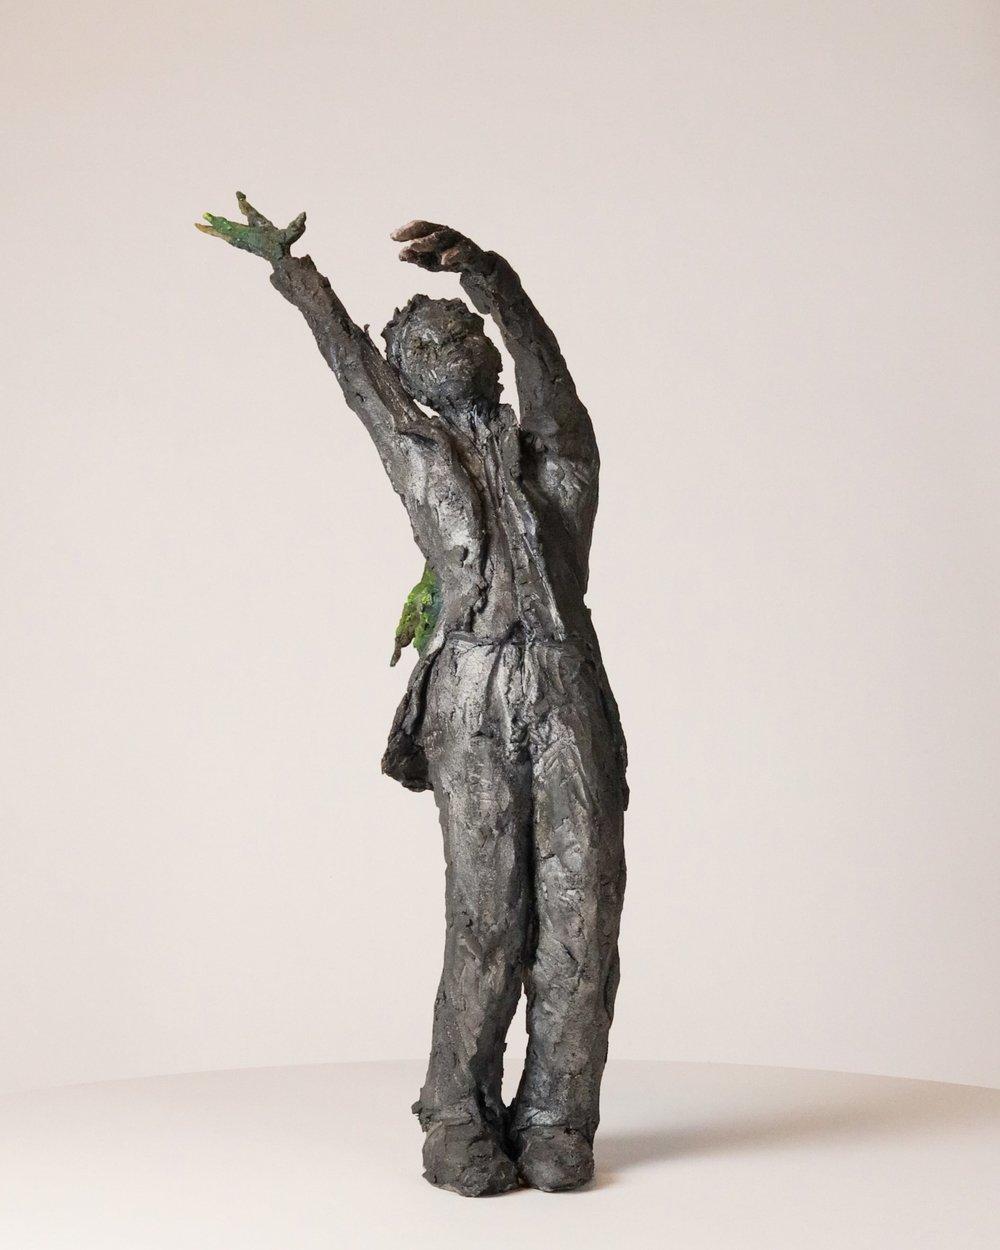 Carafe à oiseaux de Ccile Raynal - Figure masculine debout, sculpture en céramique - Sculpture de Cécile Raynal